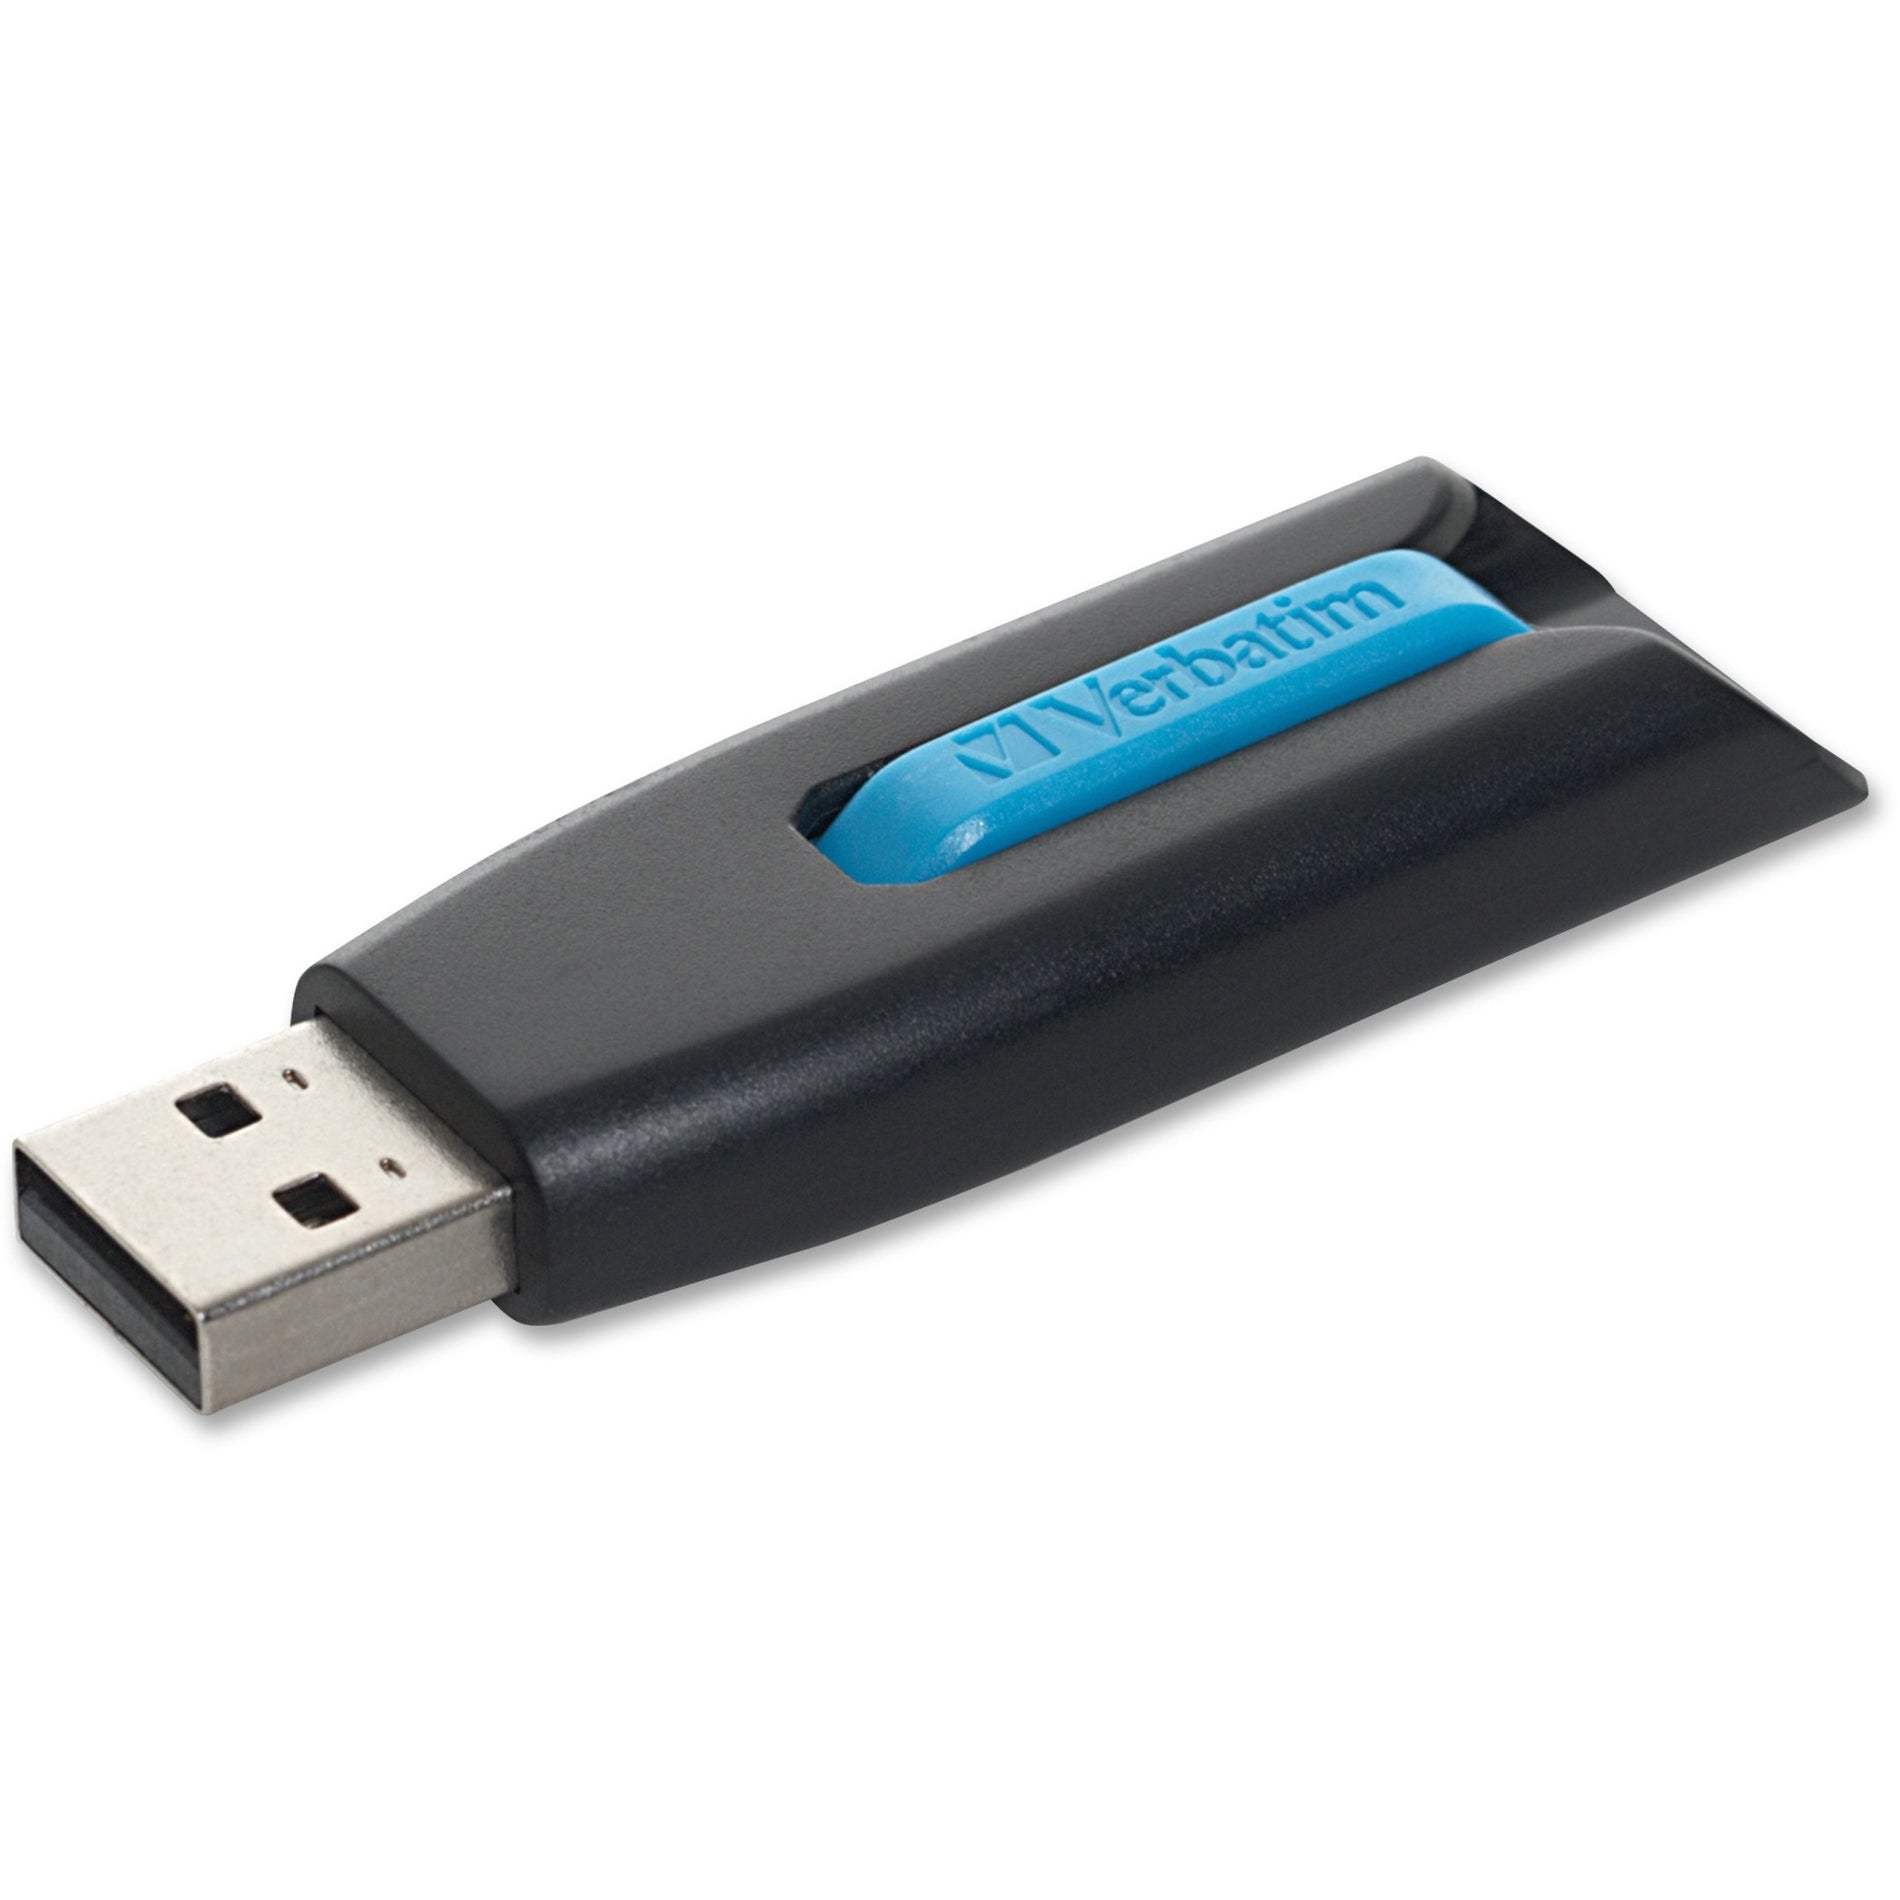 Microban 49176 Store 'n' Go V3 USB Drive, 16GB, Blue